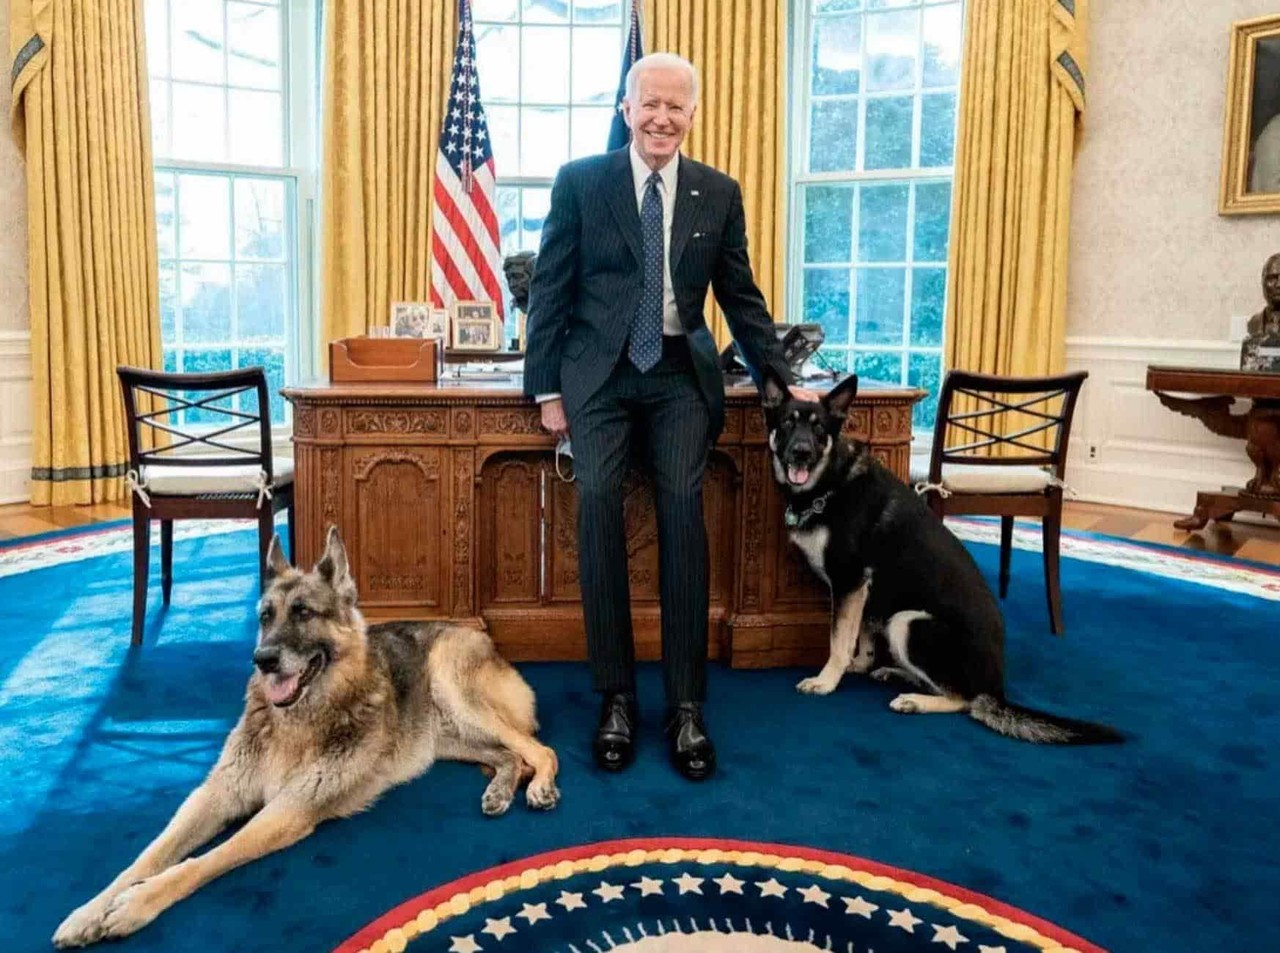 Perro de Joe Biden vuelve a morder a una persona en la Casa Blanca